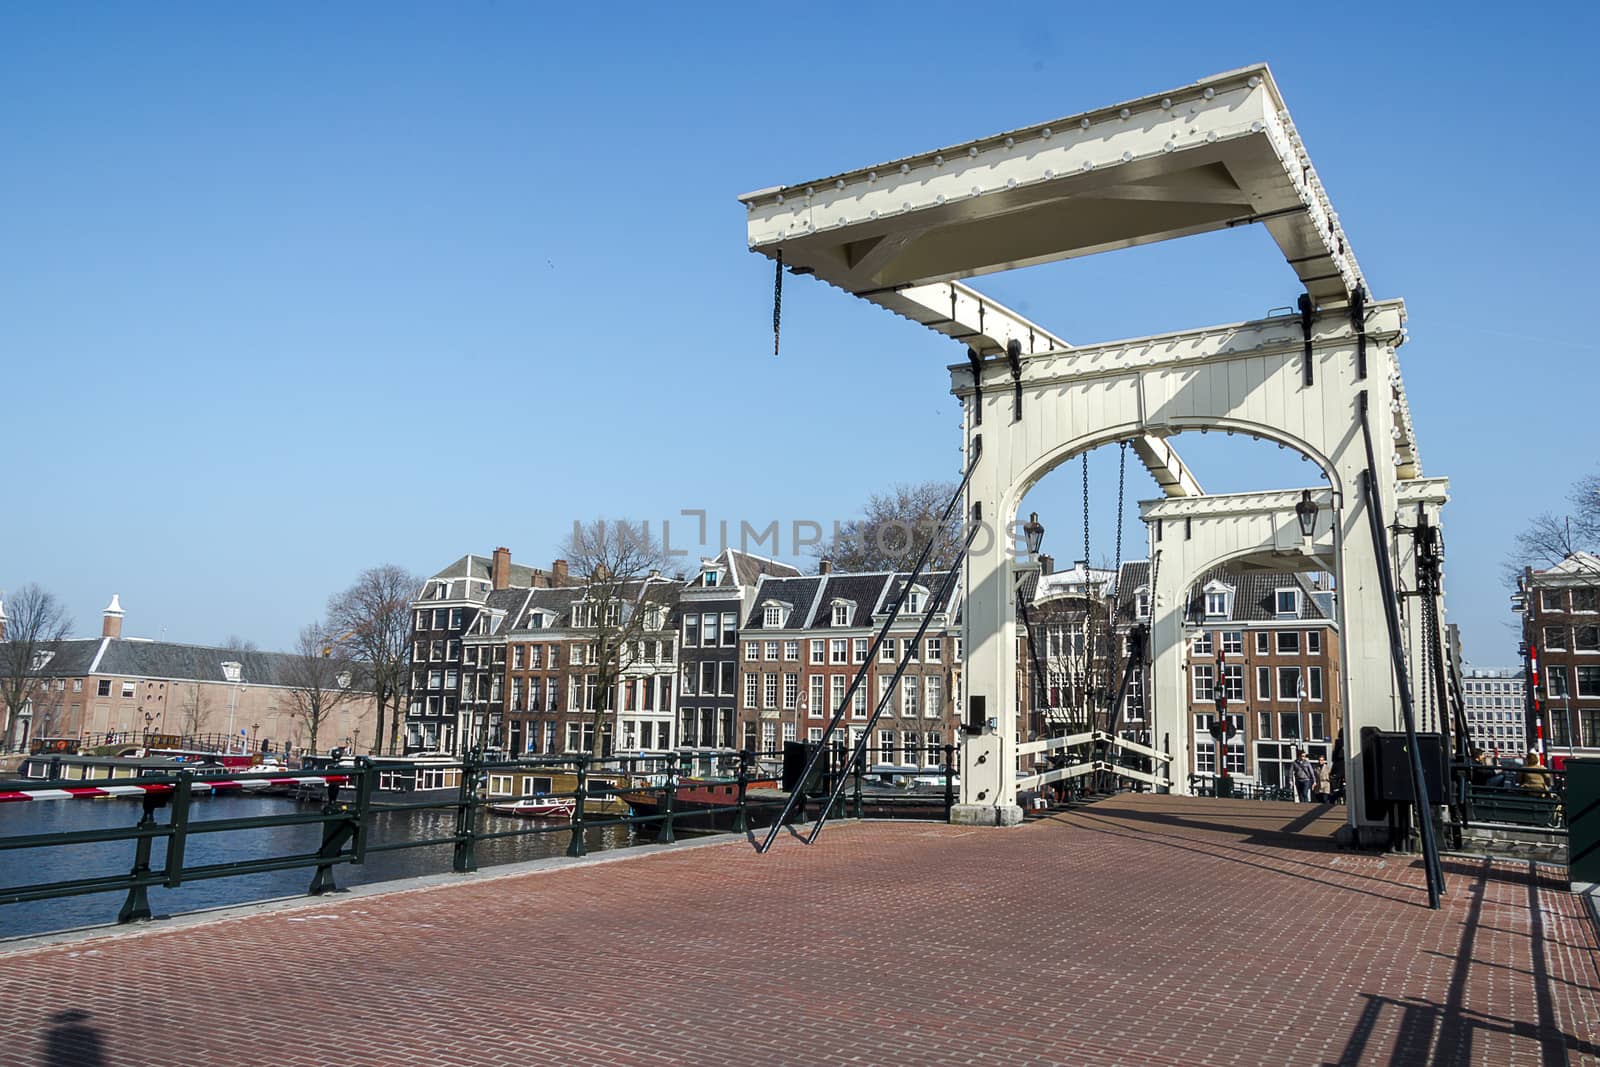 Magere Brug (skinny bridge) in Amsterdam by Tetyana